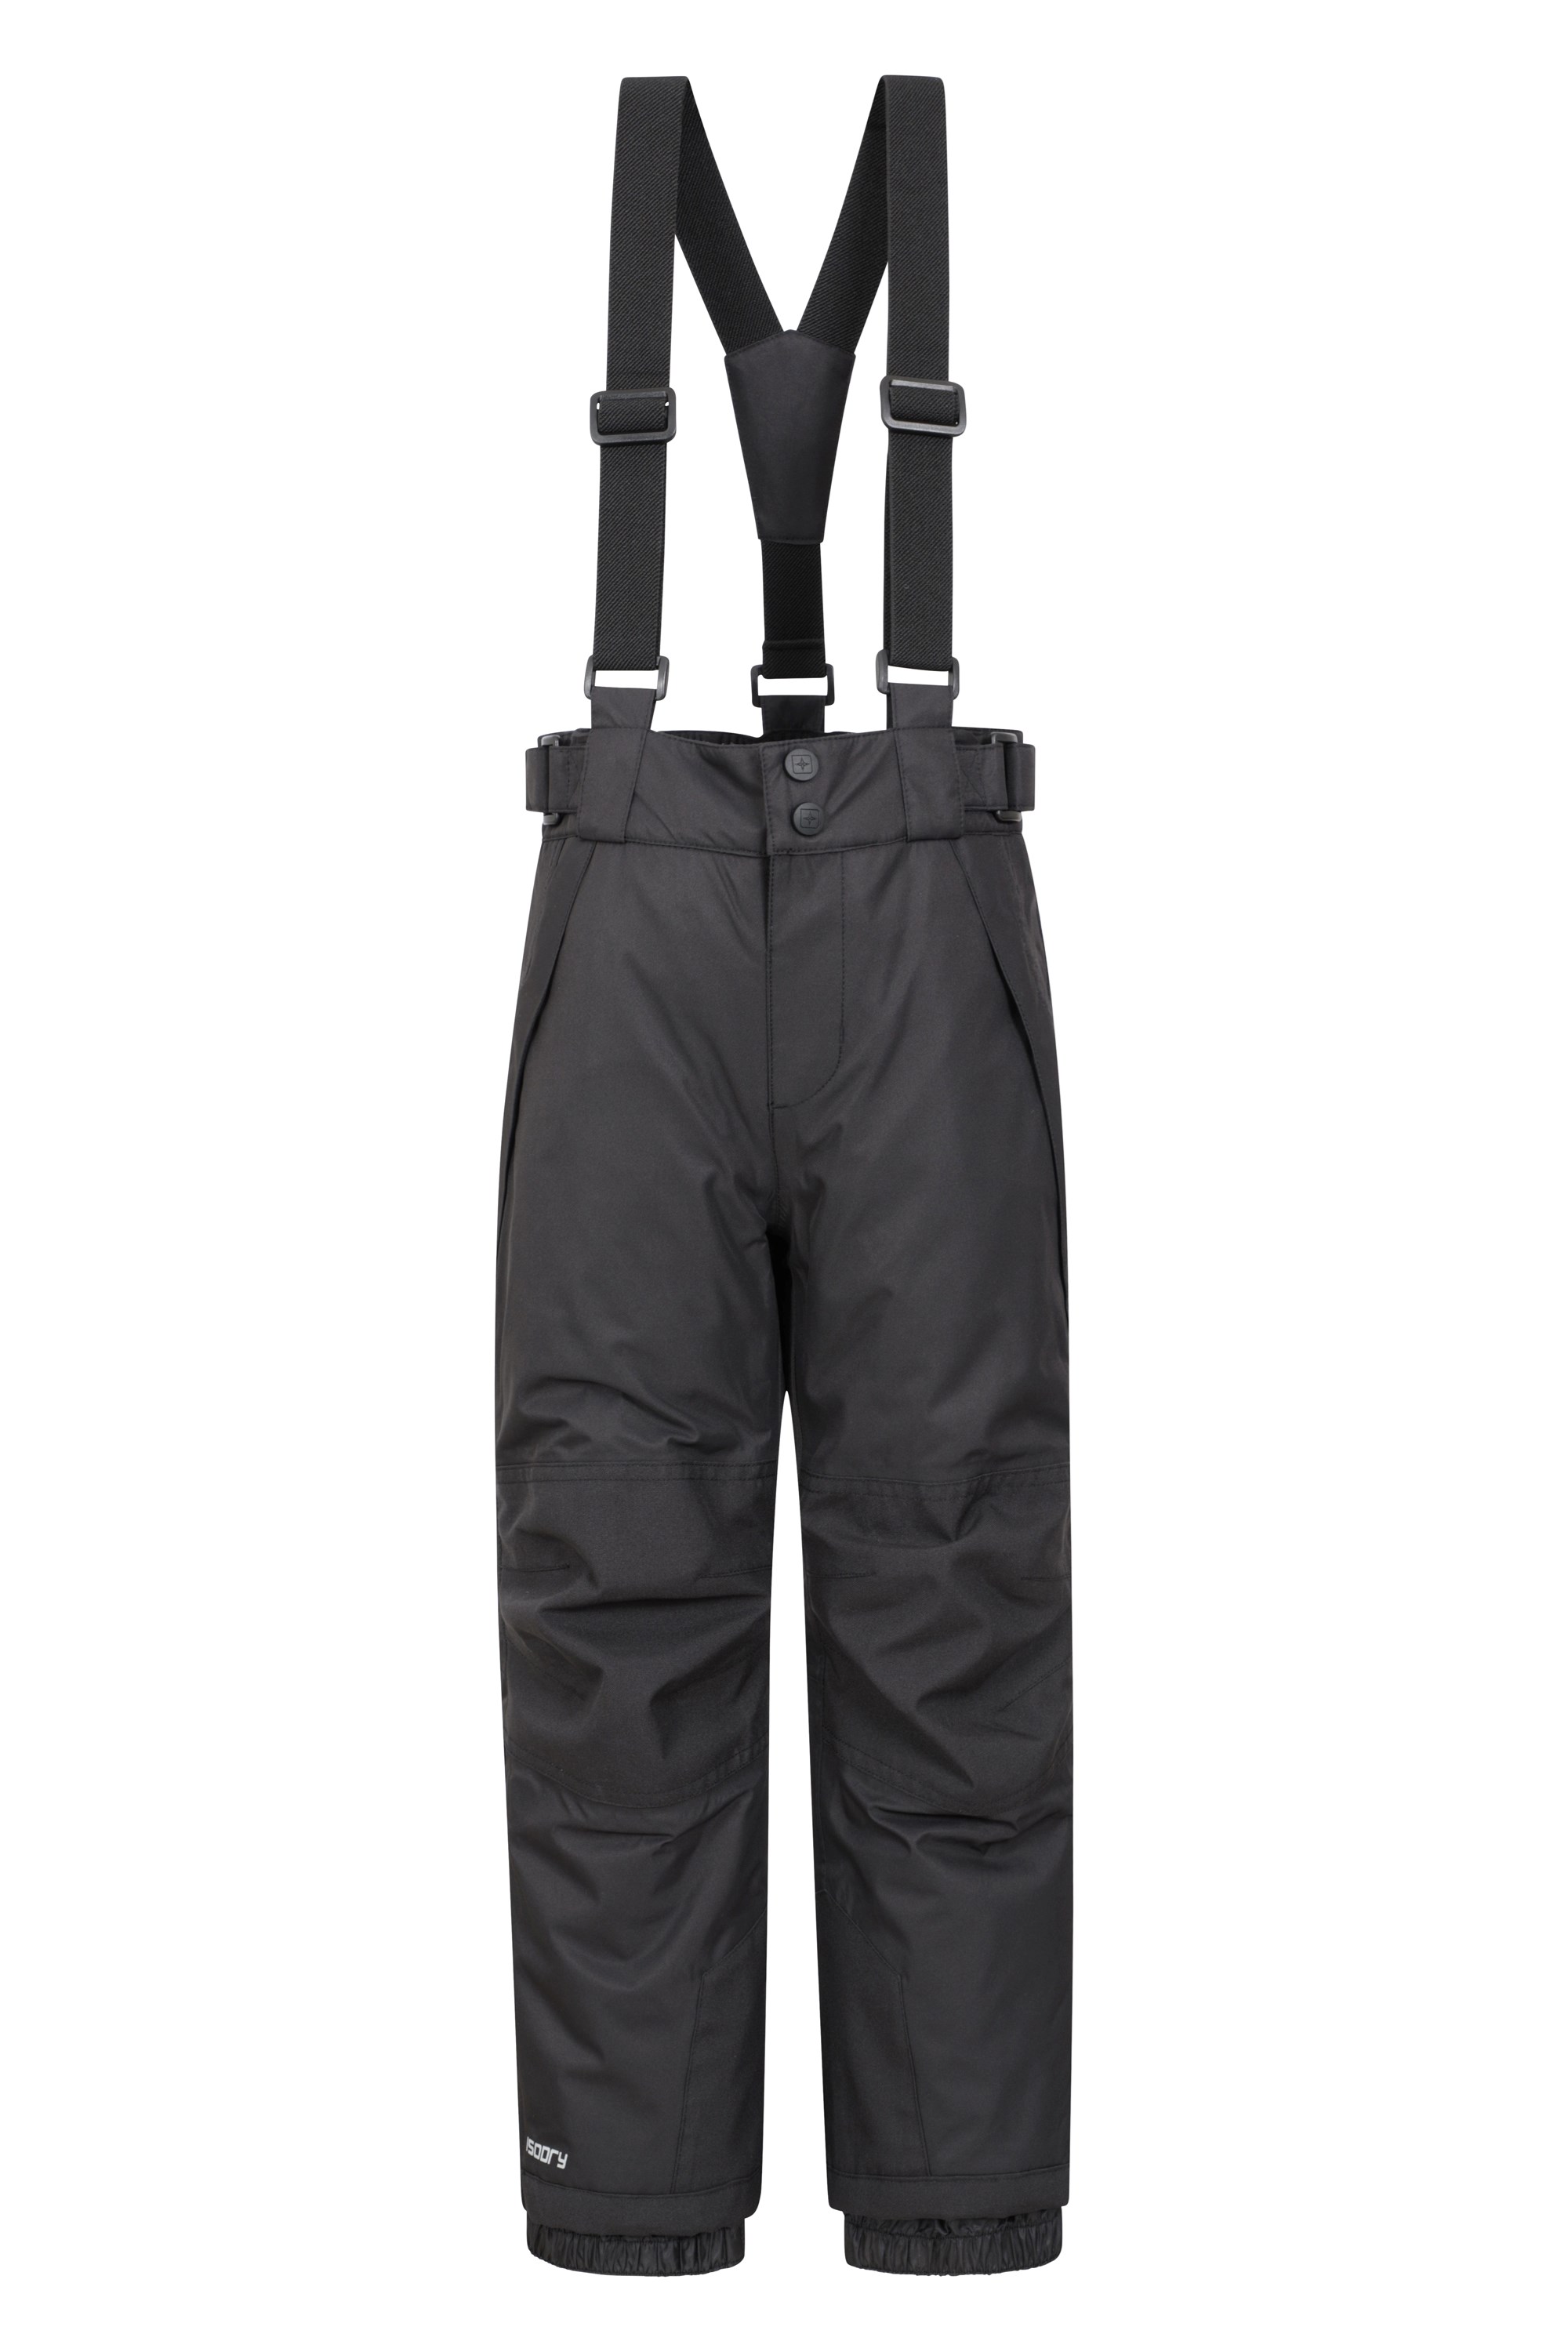 Falcon Extreme Kids Ski Pants - Black